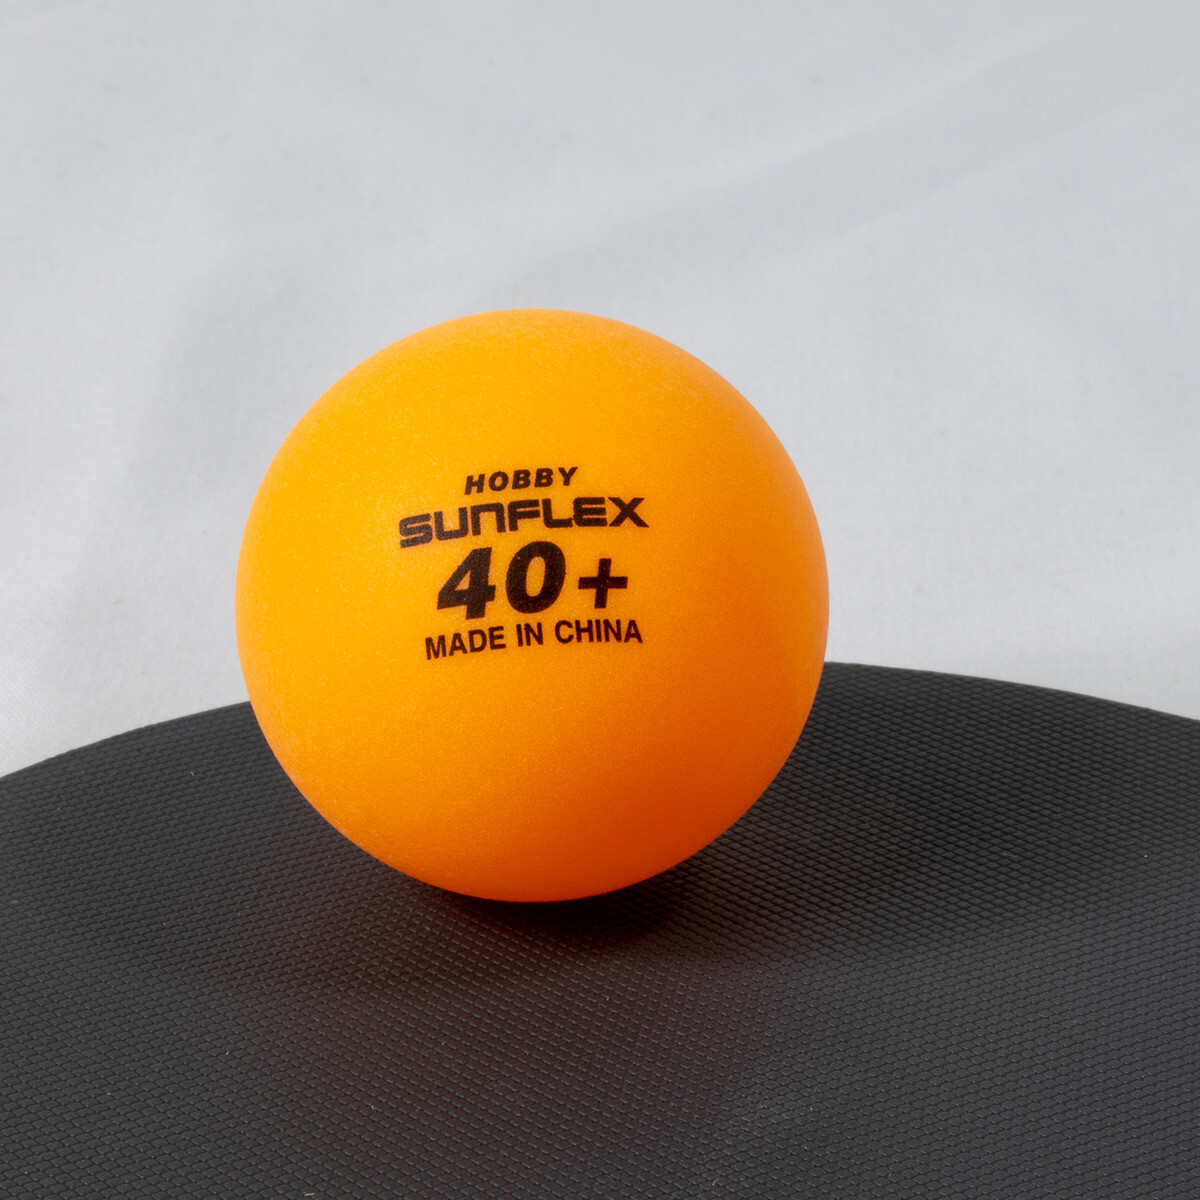 Sunflex Hobby Balls - Orange - Pack of 12